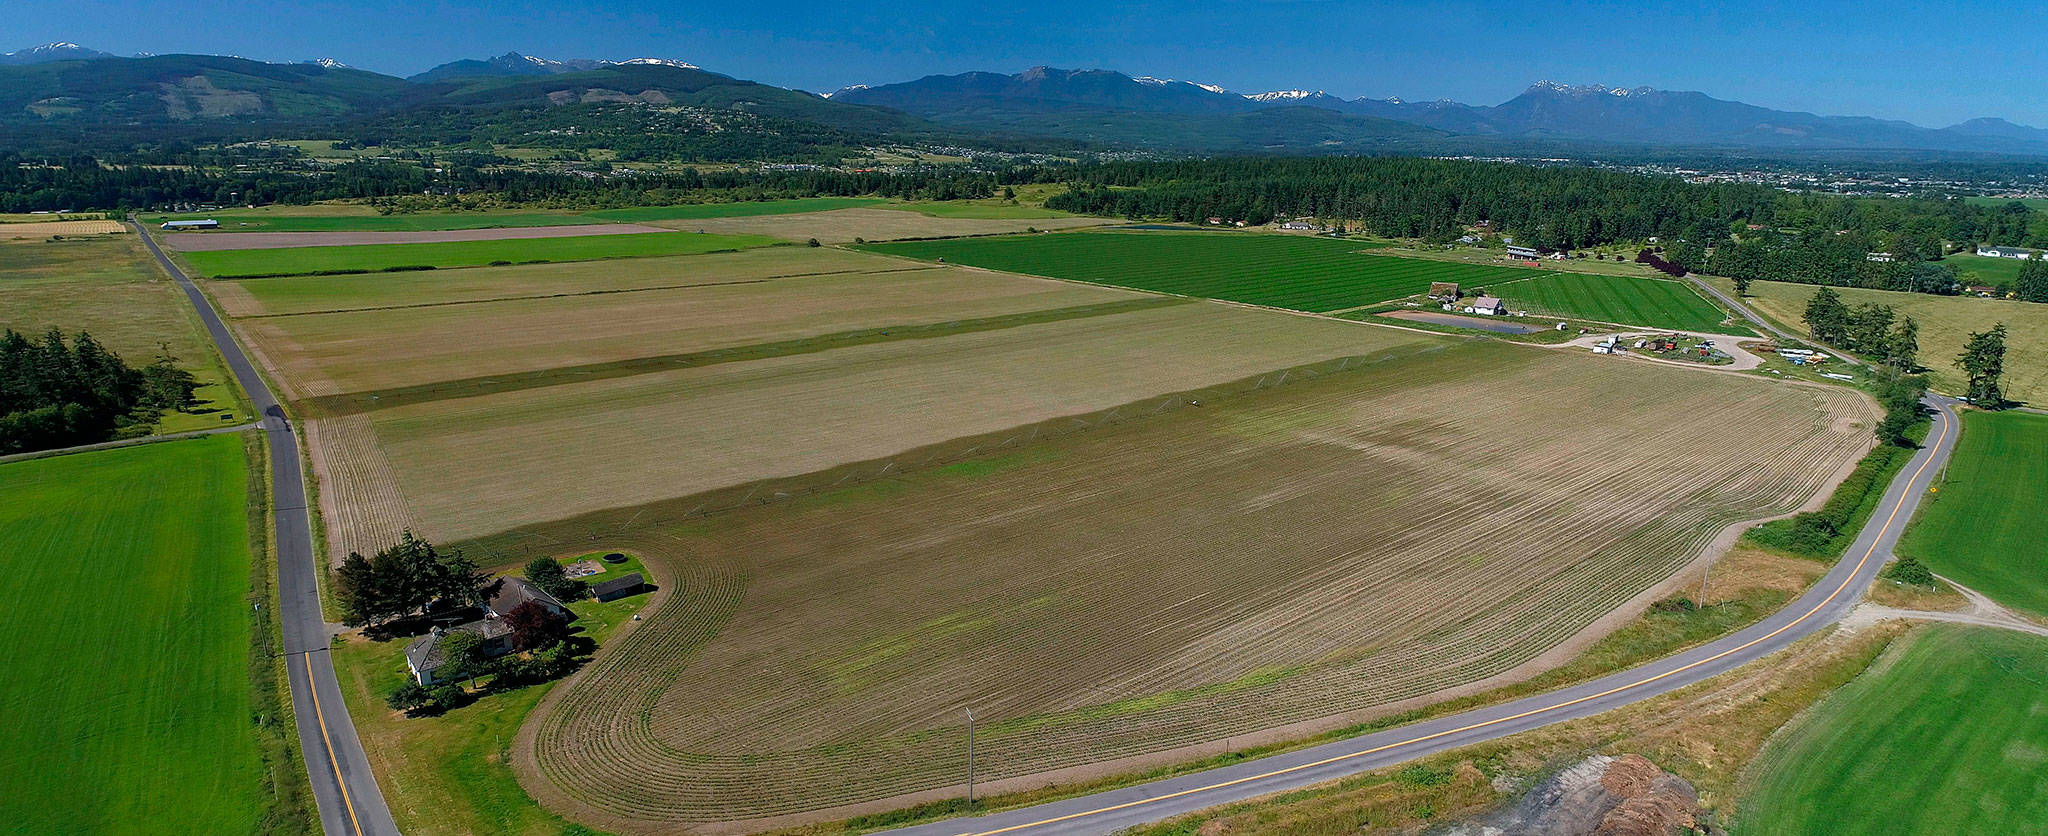 Community raises $180K to preserve 132-acre farm